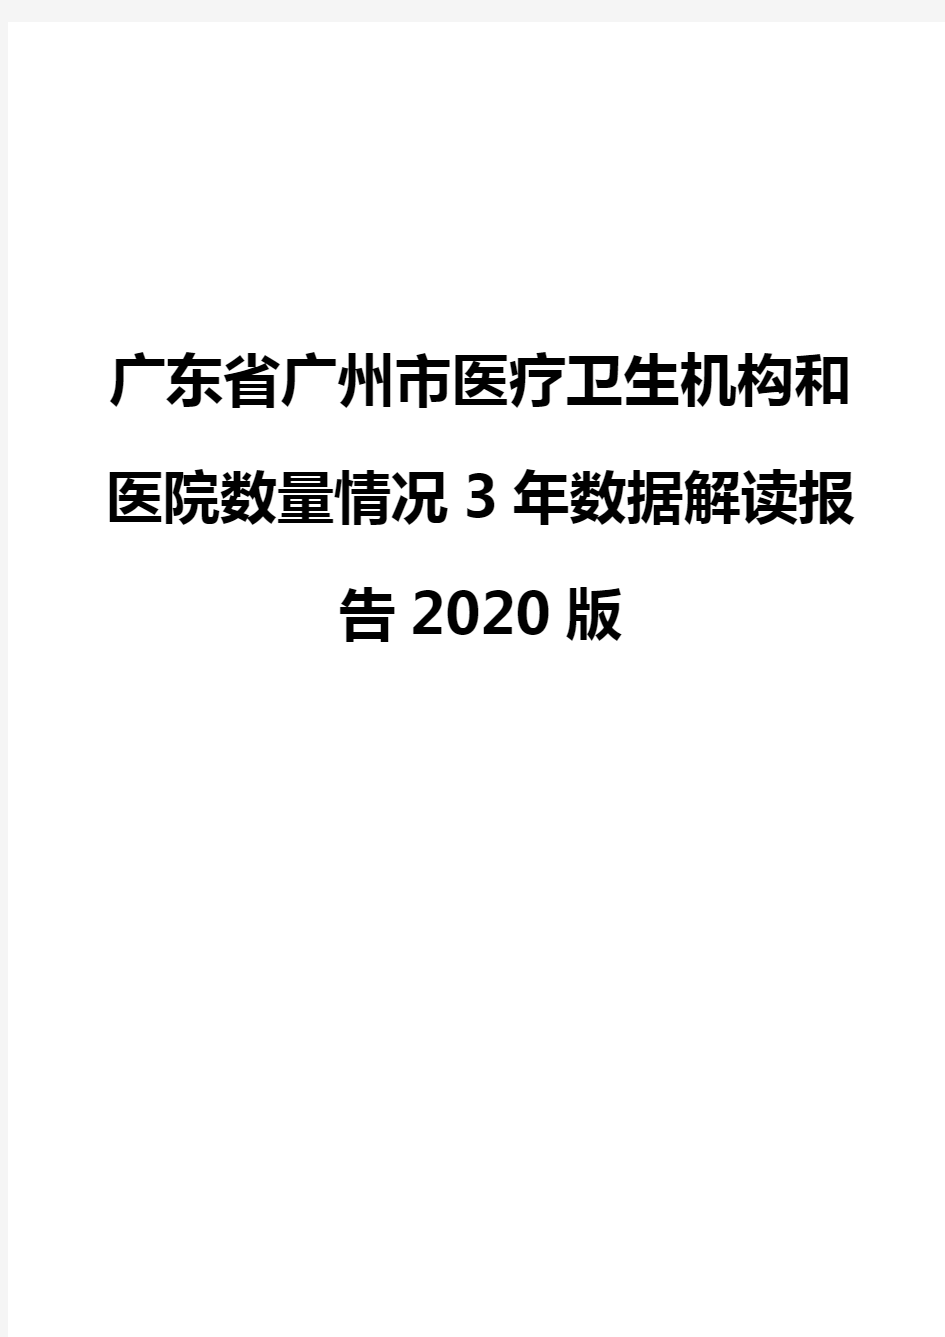 广东省广州市医疗卫生机构和医院数量情况3年数据解读报告2020版